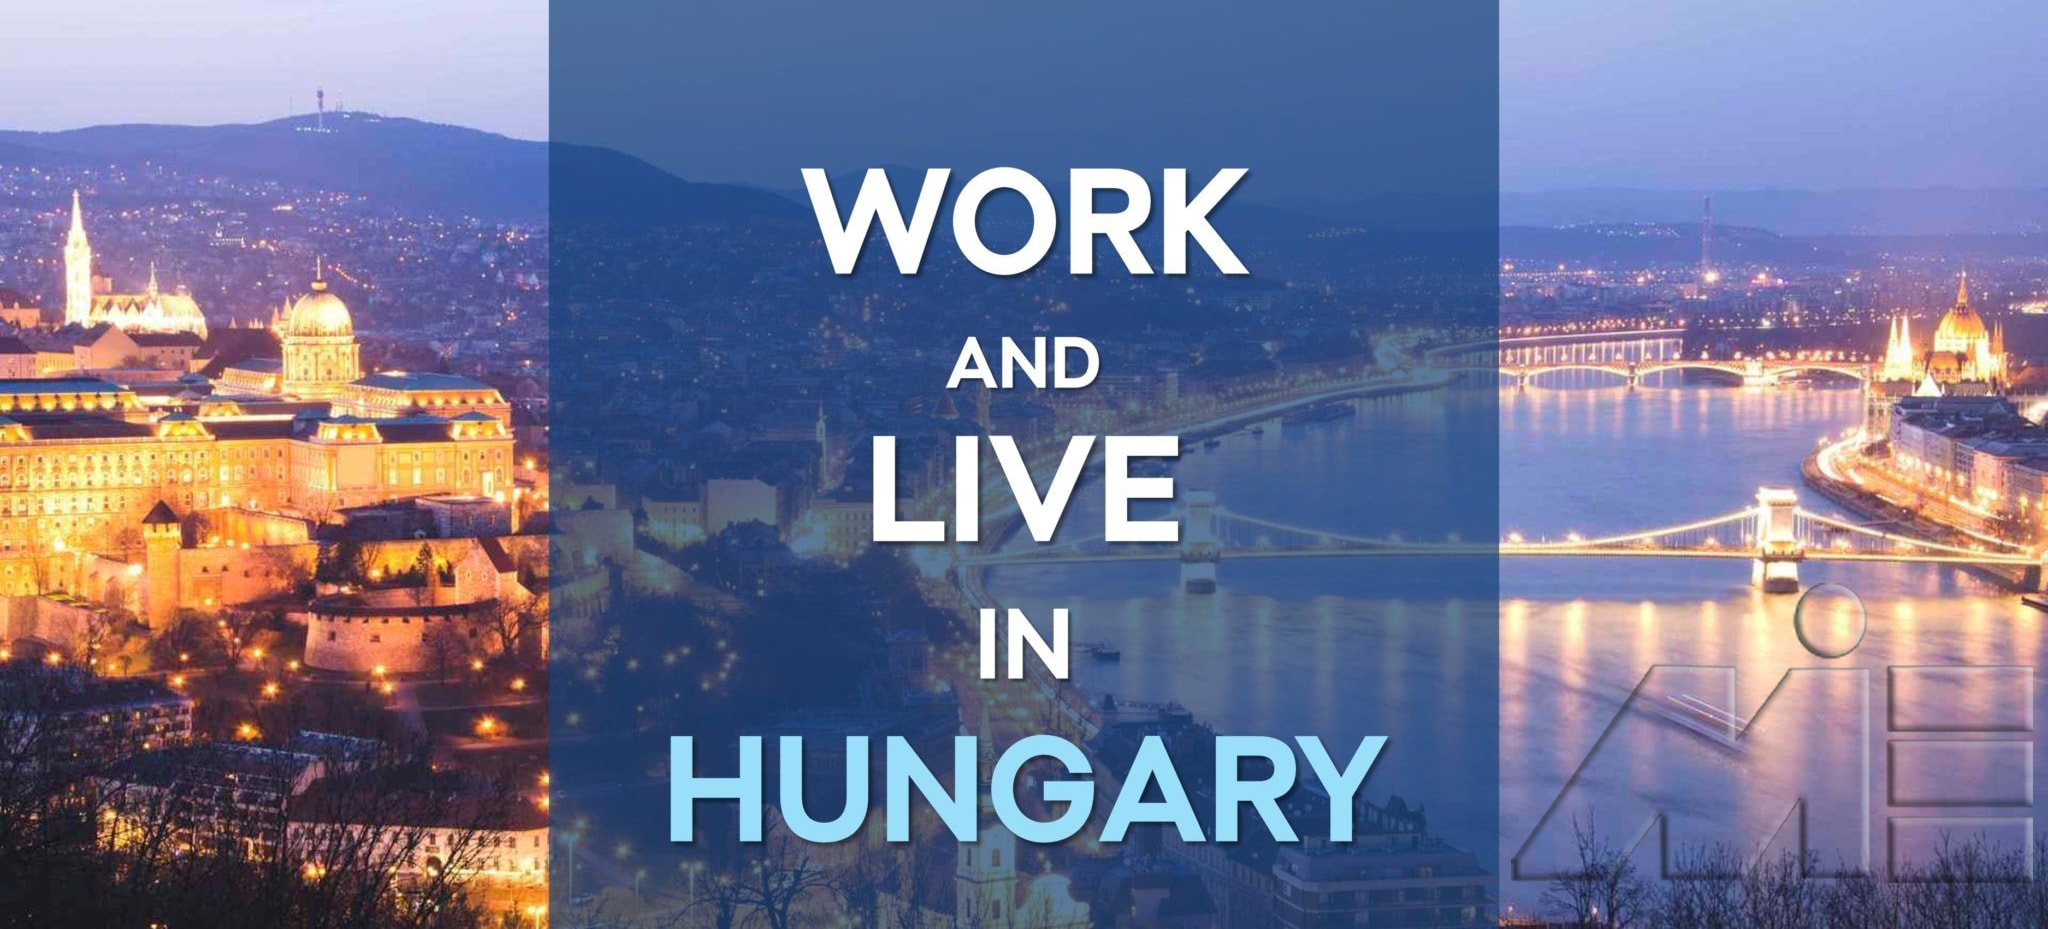 کار در مجارستان ـ ویزای کاری مجارستان